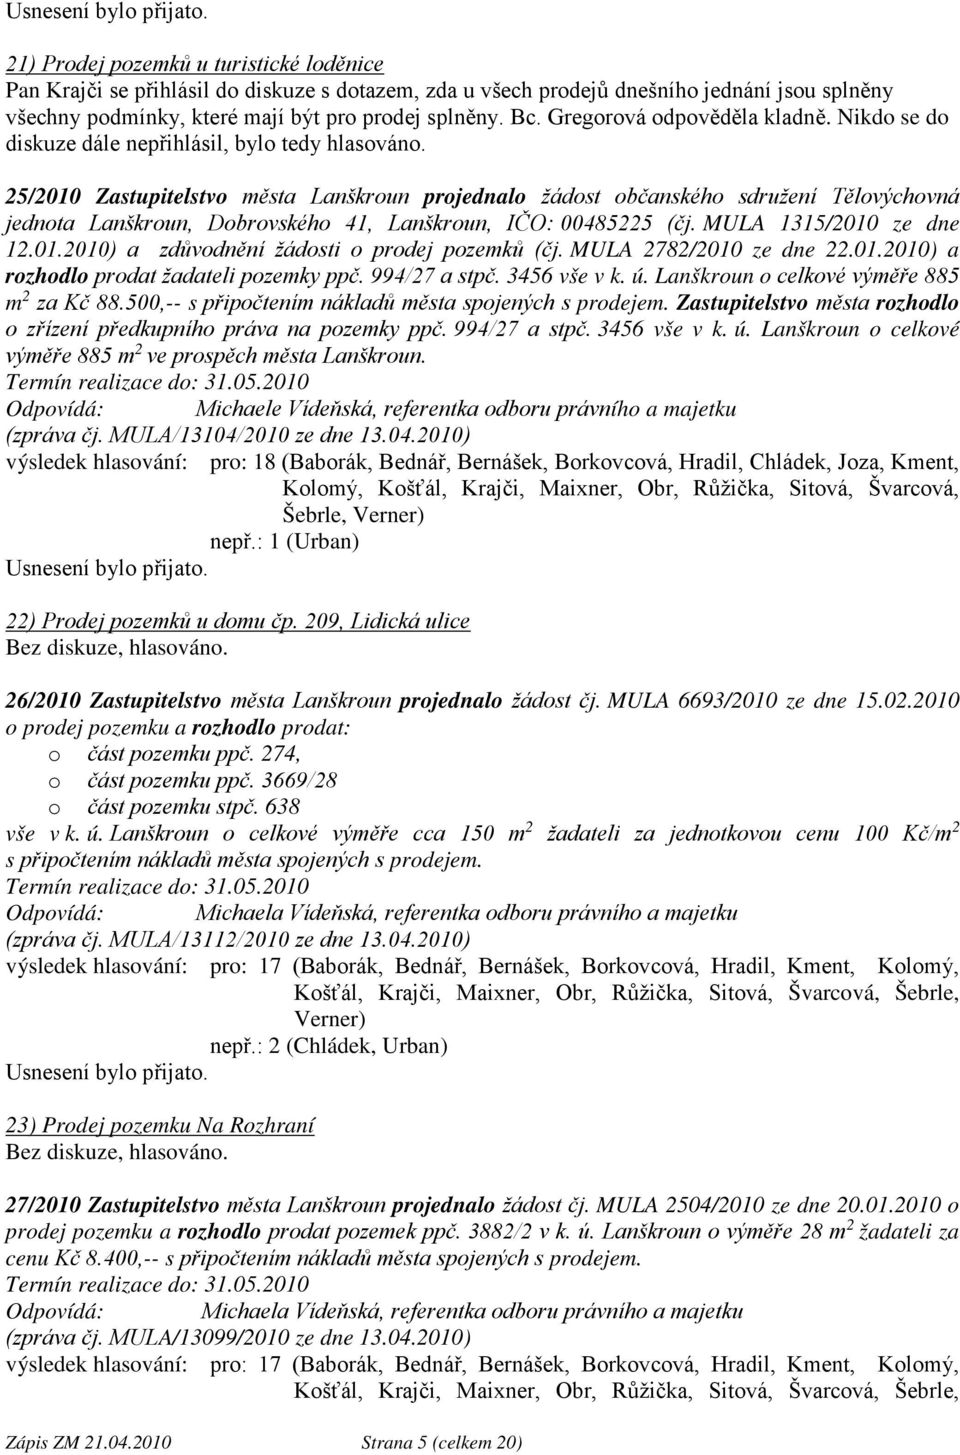 25/2010 Zastupitelstvo města Lanškroun projednalo žádost občanského sdružení Tělovýchovná jednota Lanškroun, Dobrovského 41, Lanškroun, IČO: 00485225 (čj. MULA 1315/2010 ze dne 12.01.2010) a zdůvodnění žádosti o prodej pozemků (čj.